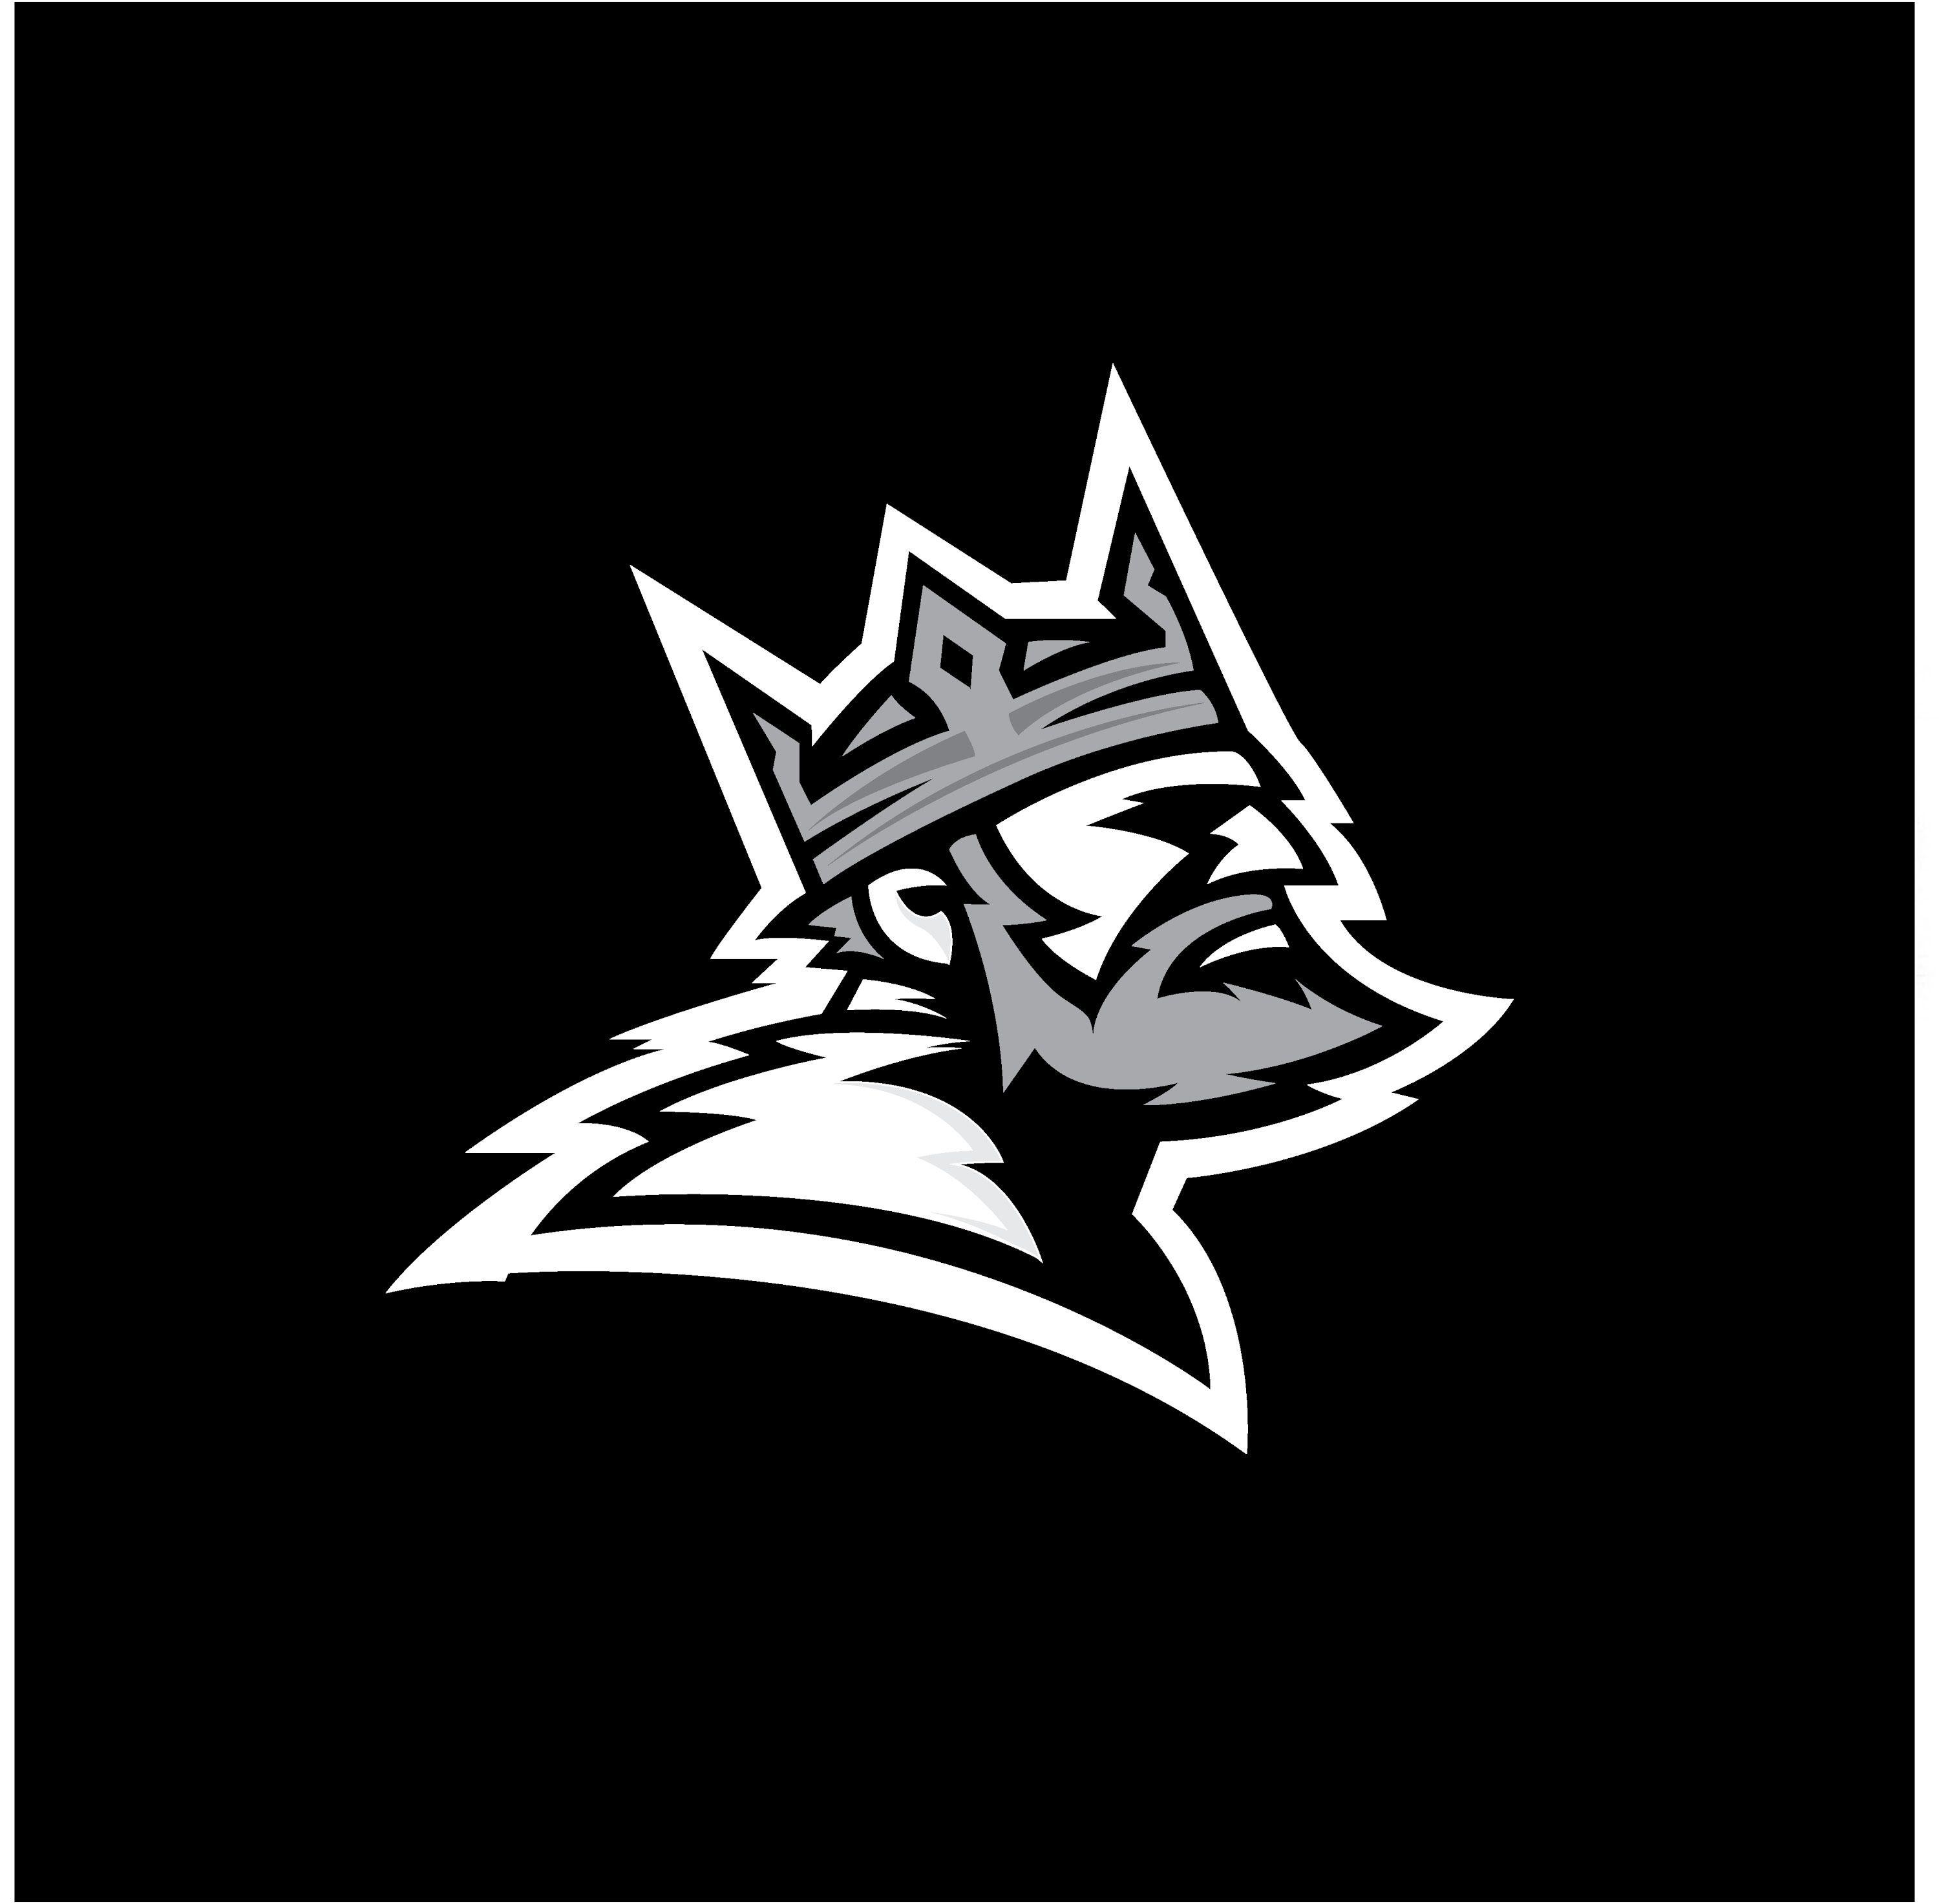 Black Viking Logo - 11 King drawing logo for free download on Ayoqq.org